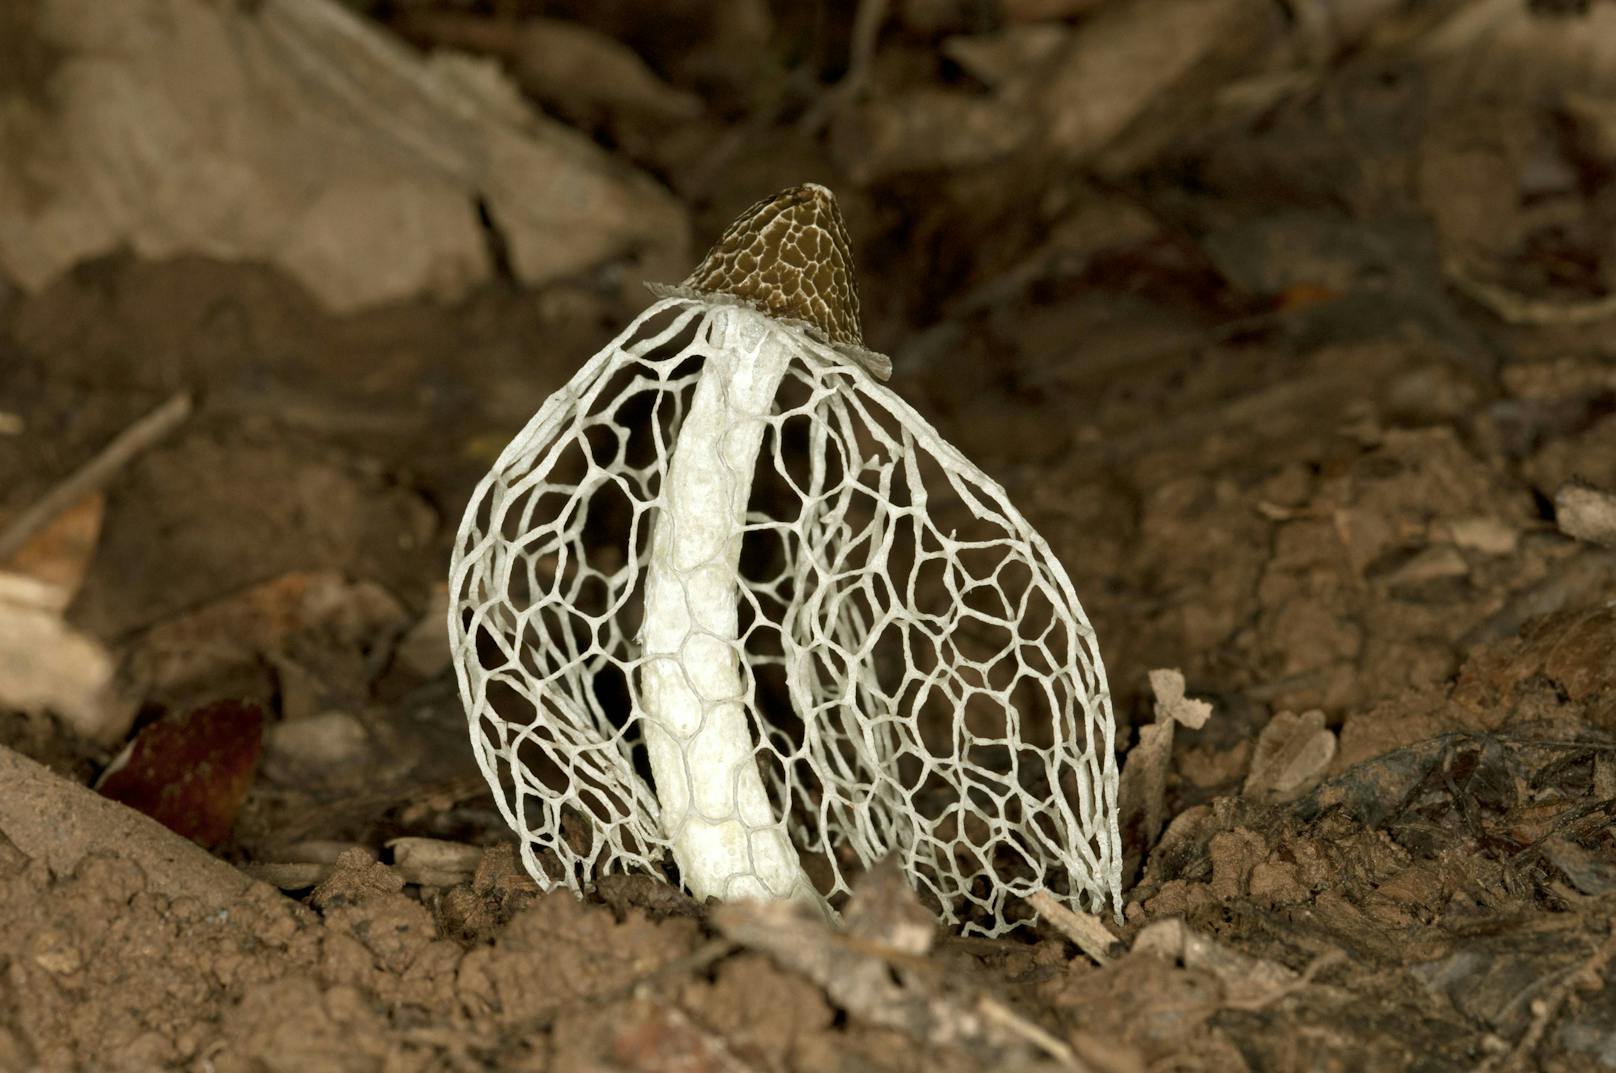 Tropische Stinkmorchel, Phallus indusiatus (Phallus indusiatus). Die Kappe ist bedeckt von einer bräunlichen faulriechenden Schicht.